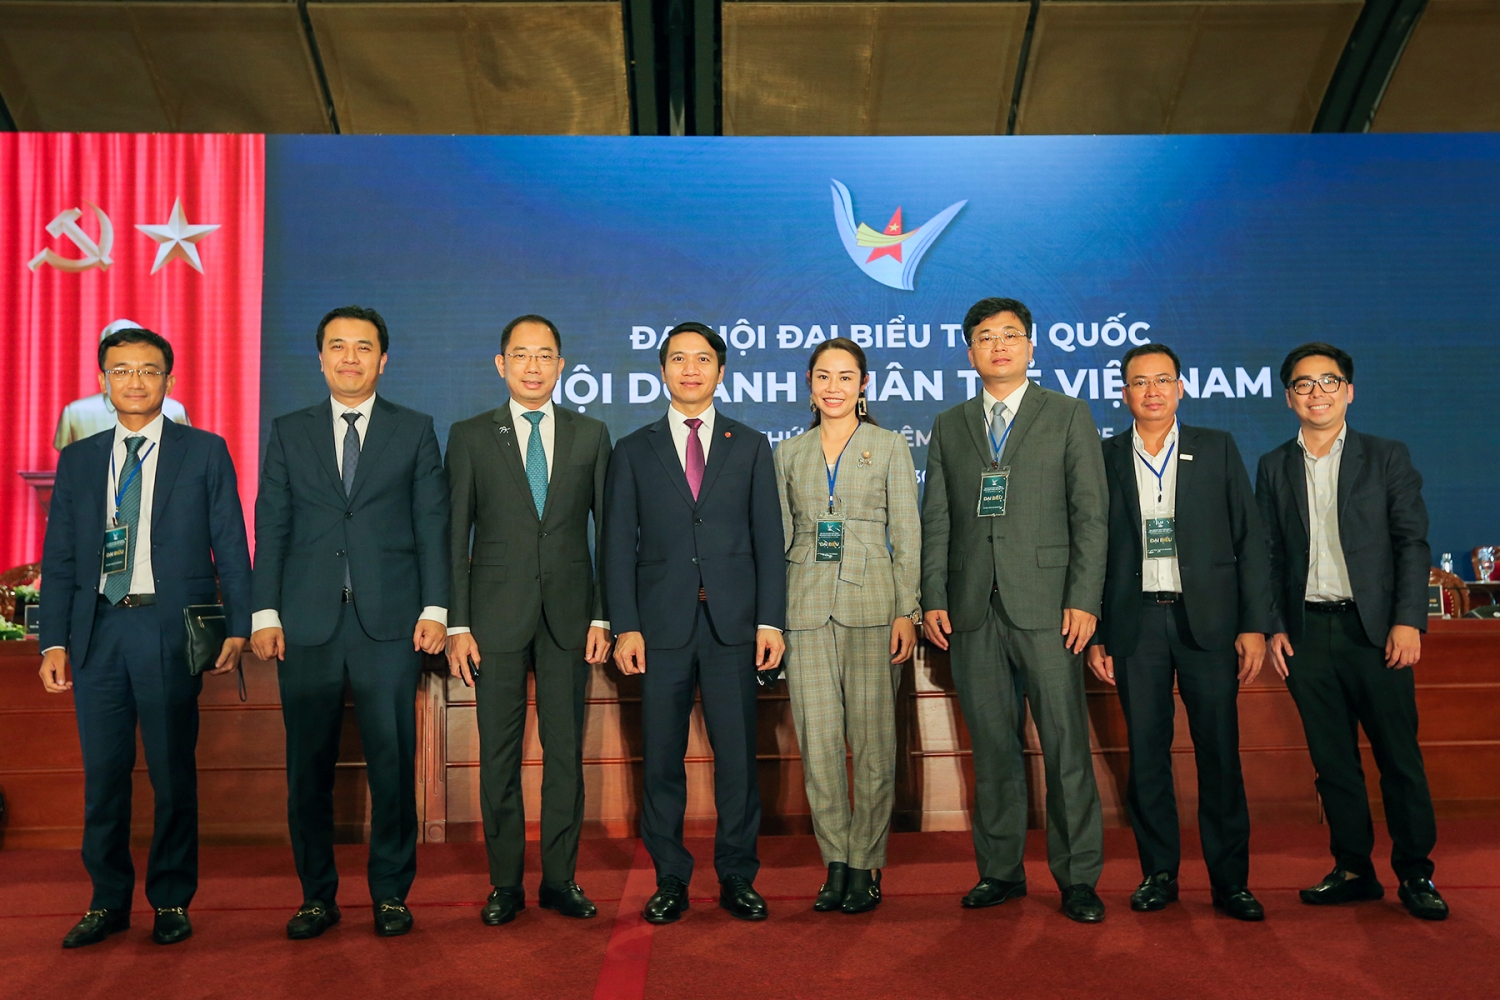 2 doanh nhân Dầu khí tham gia Ủy ban Trung ương Hội Doanh nhân trẻ Việt Nam khóa VII